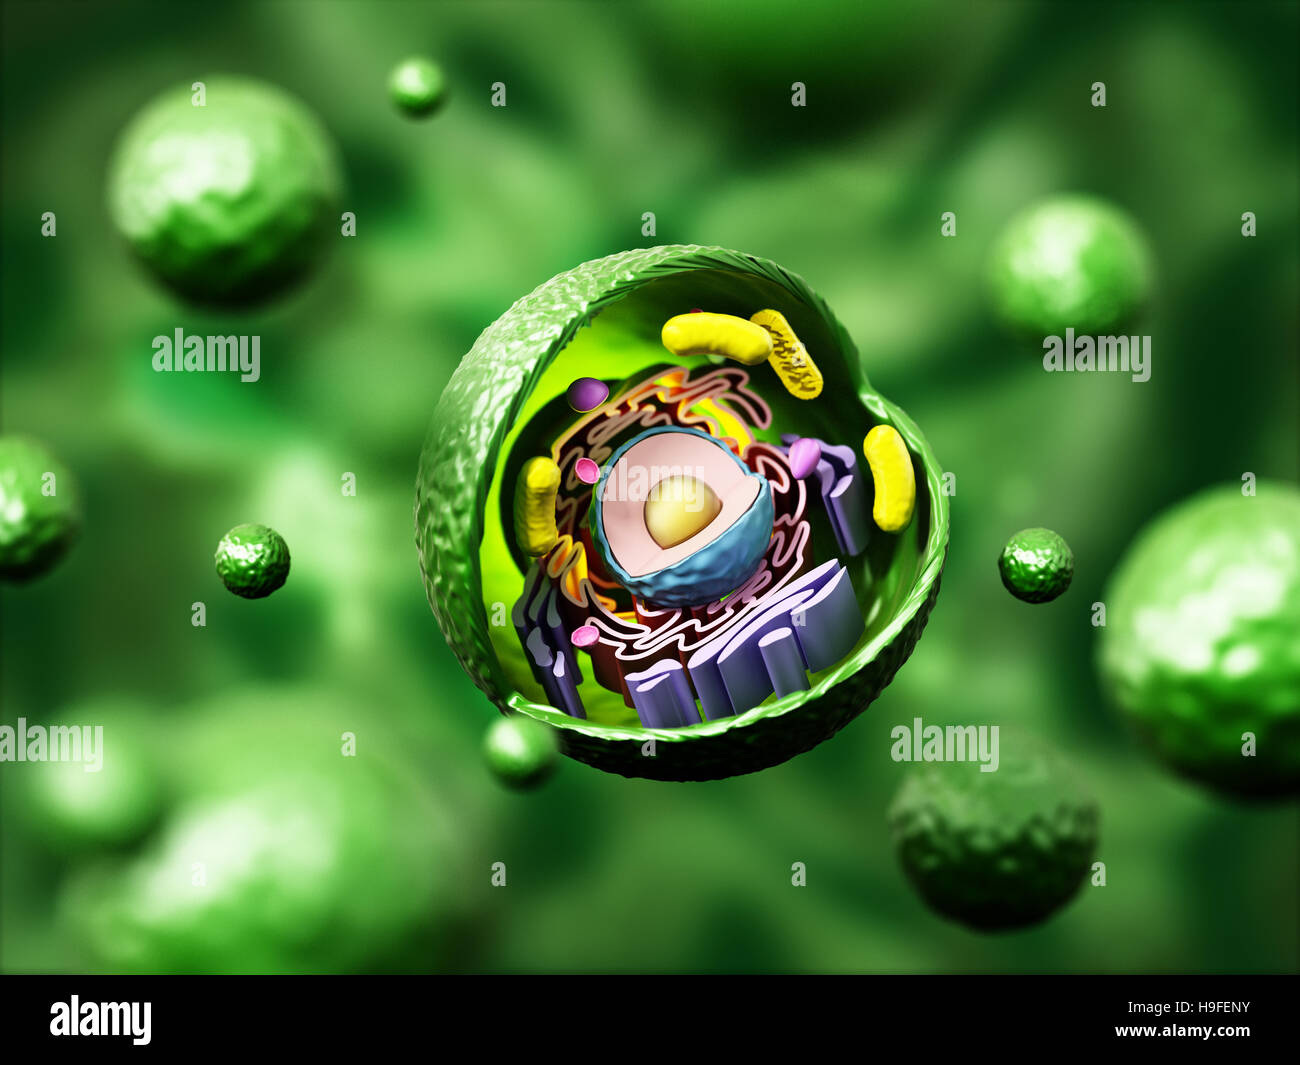 Cellule animale anatomie sur fond vert. 3D illustration. Banque D'Images